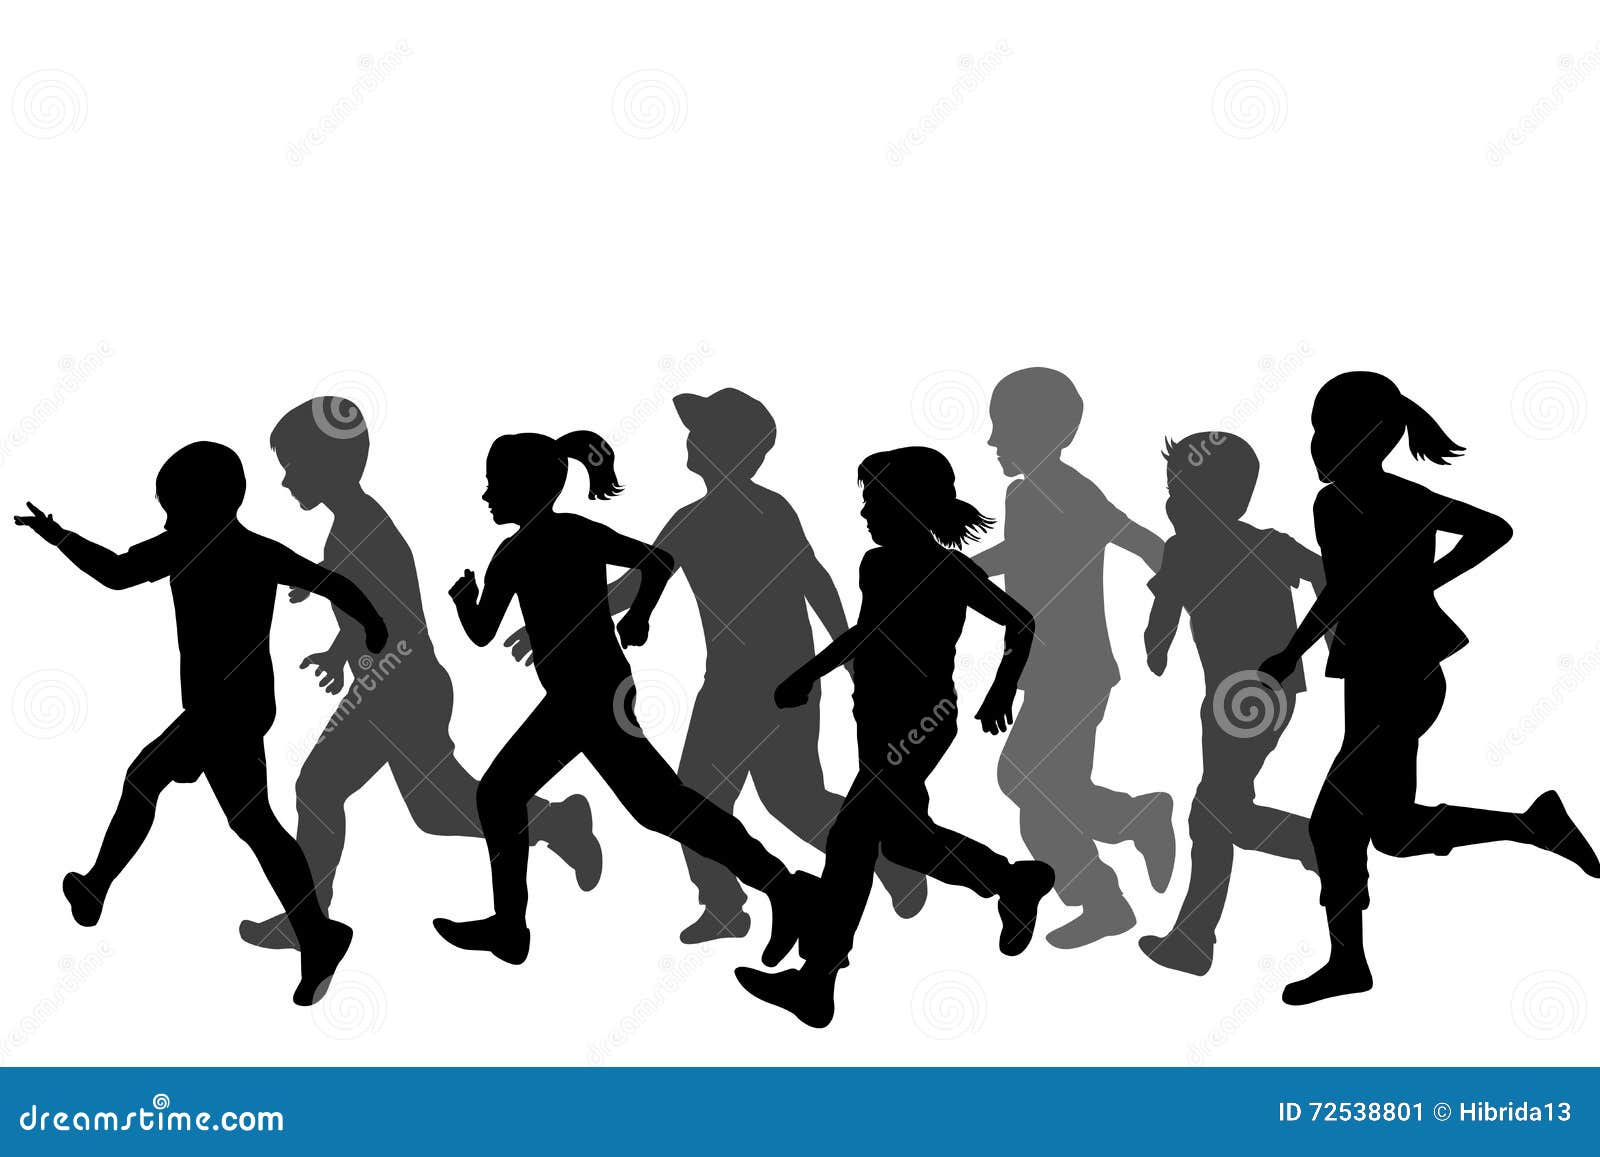 children silhouettes running